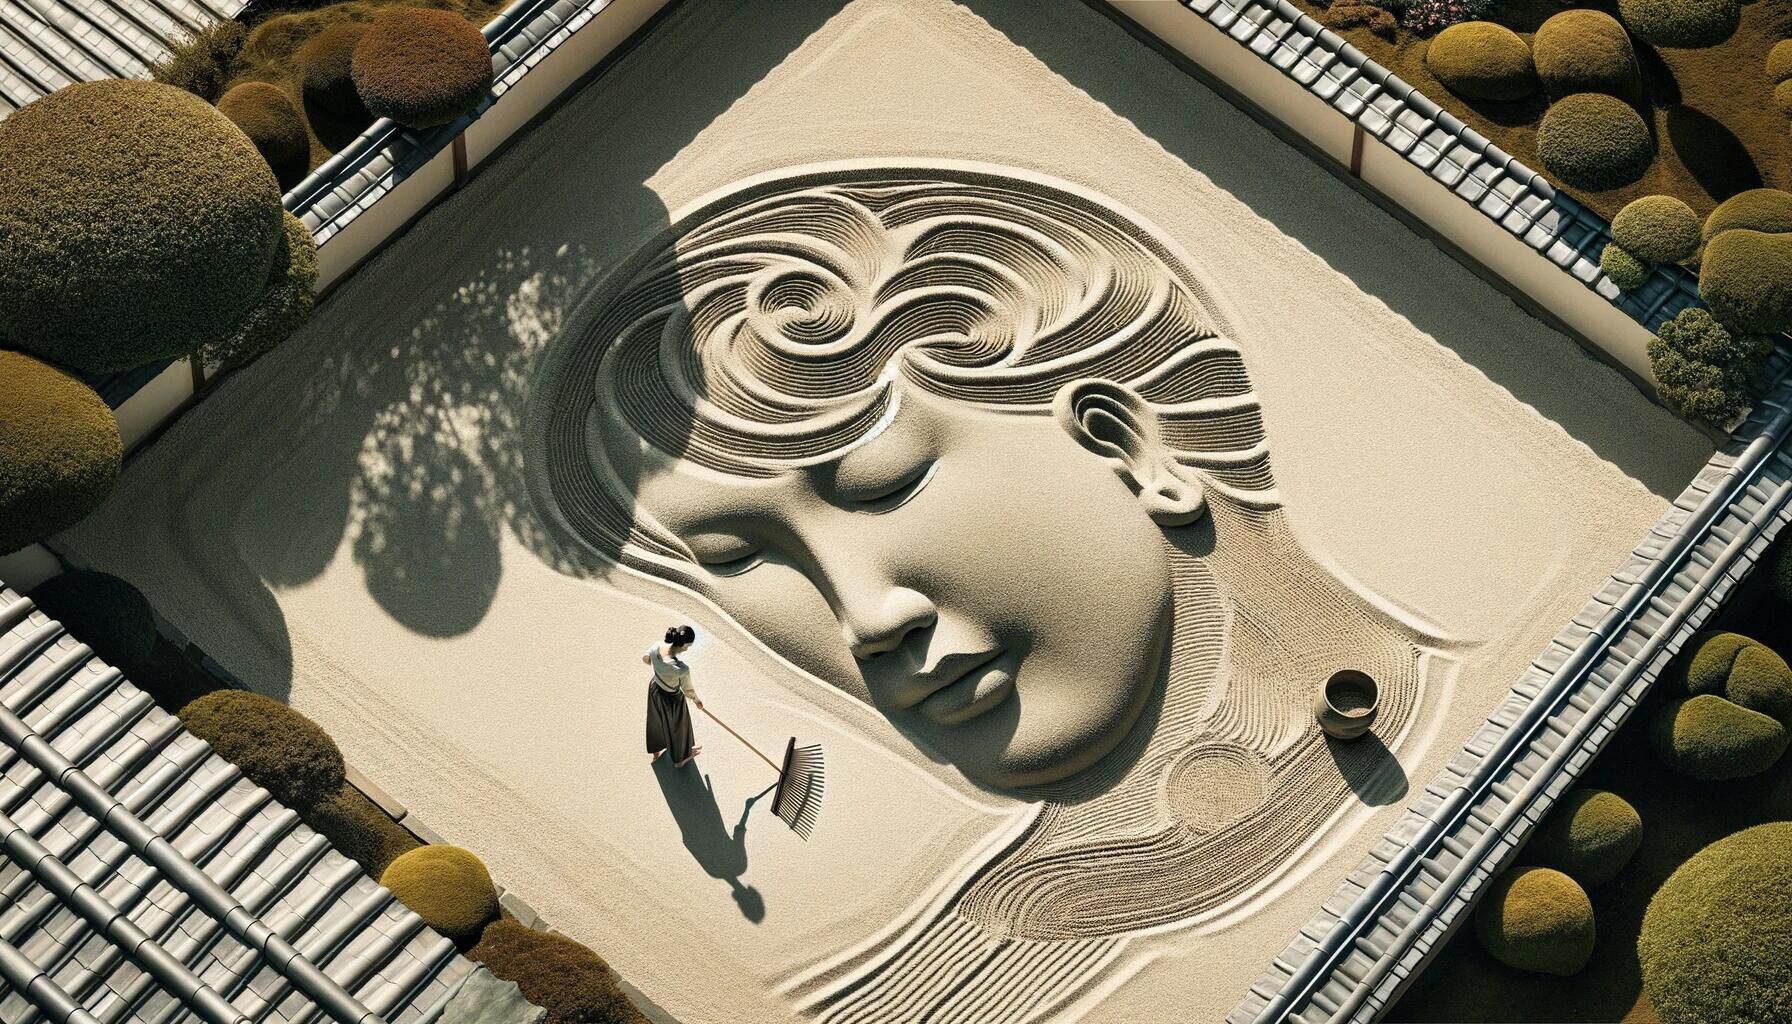 Composición visual de un jardín Zen con una cabeza en silueta, simbolizando el equilibrio y la serenidad mental. La fotografía captura la conexión entre la naturaleza, la psicología y técnicas de relajación como la meditación, enfatizando la búsqueda de la paz interior. (Imagen ilustrativa Infobae)